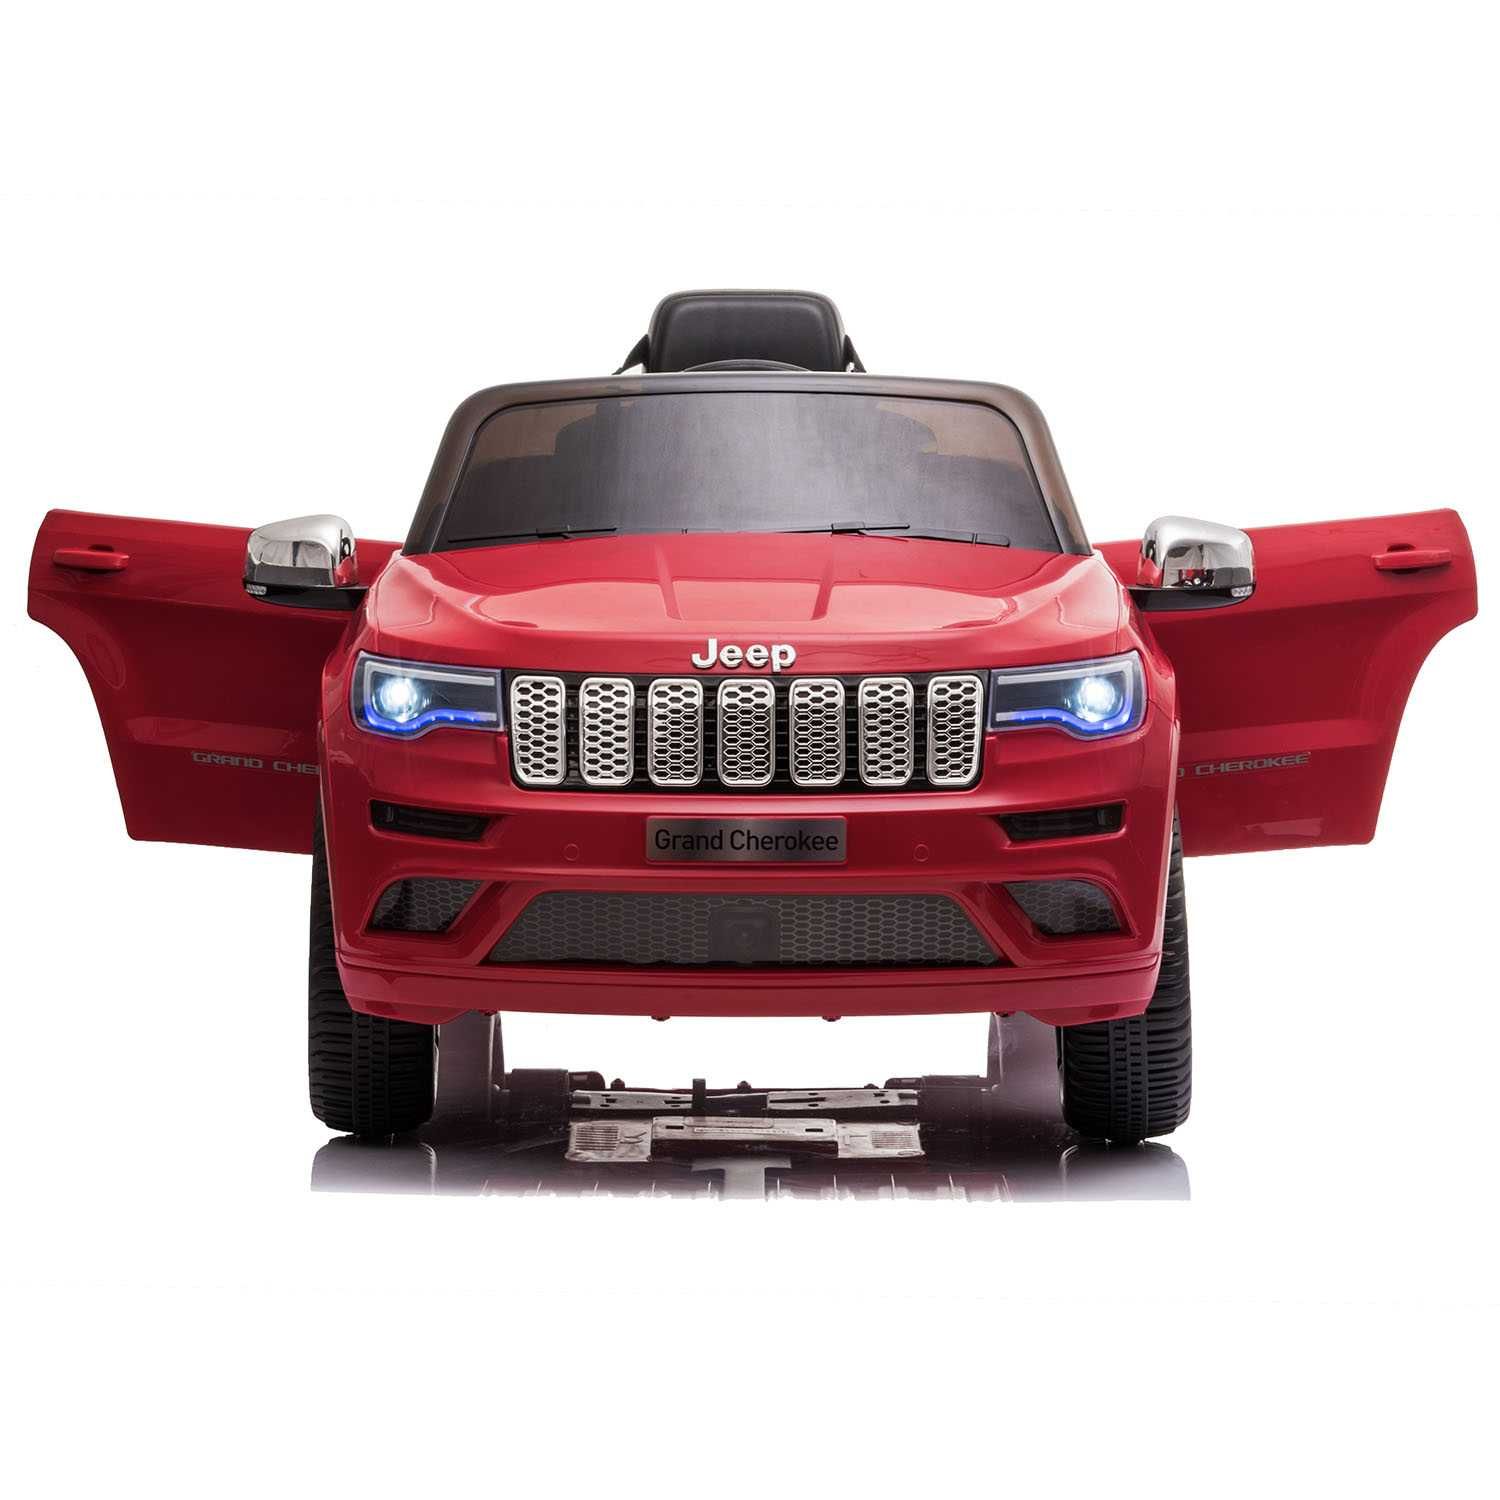 Mașinuță electrică Jeep Grand Cherokee rosu